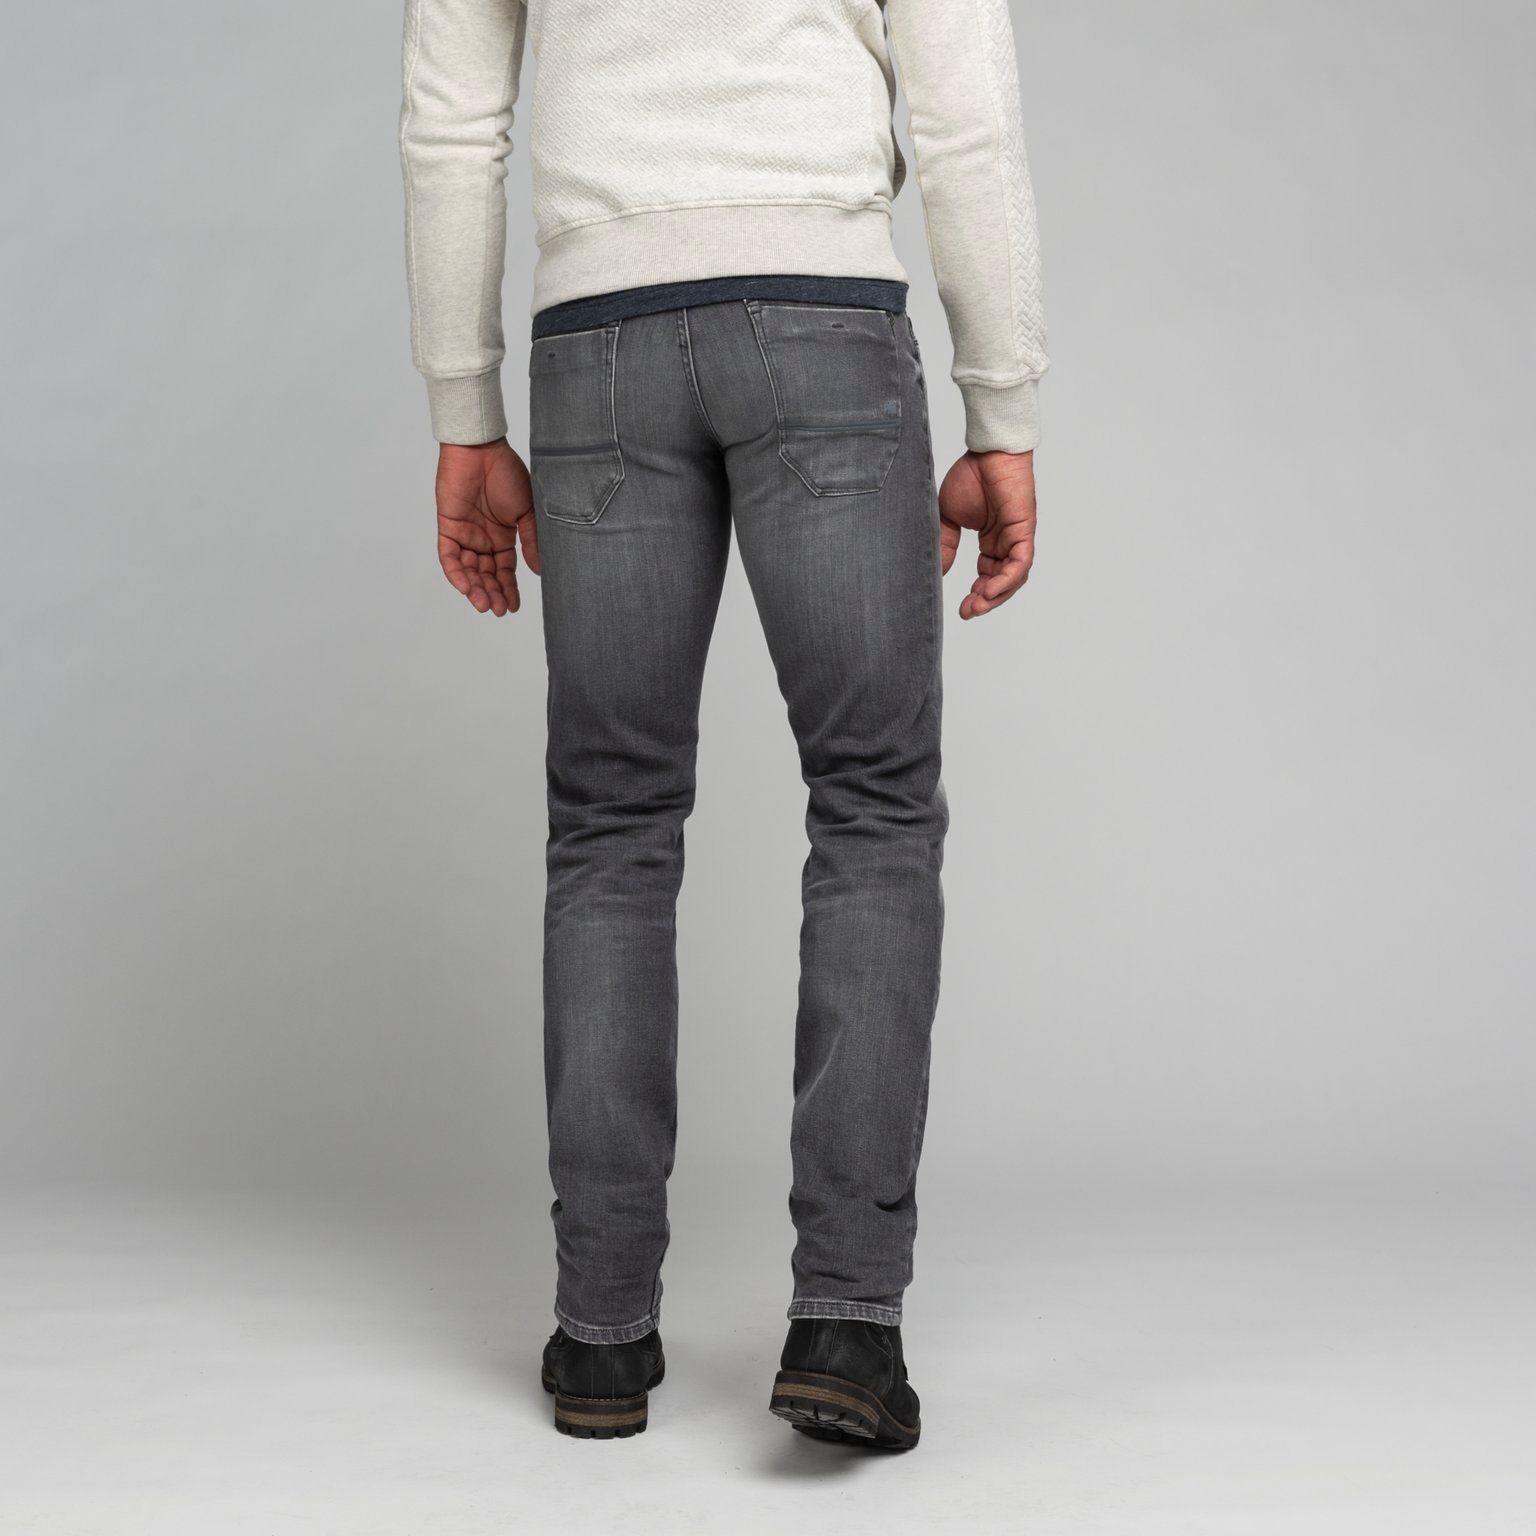 wash PTR650-GWS SKYMASTER LEGEND PME LEGEND grey 5-Pocket-Jeans PME